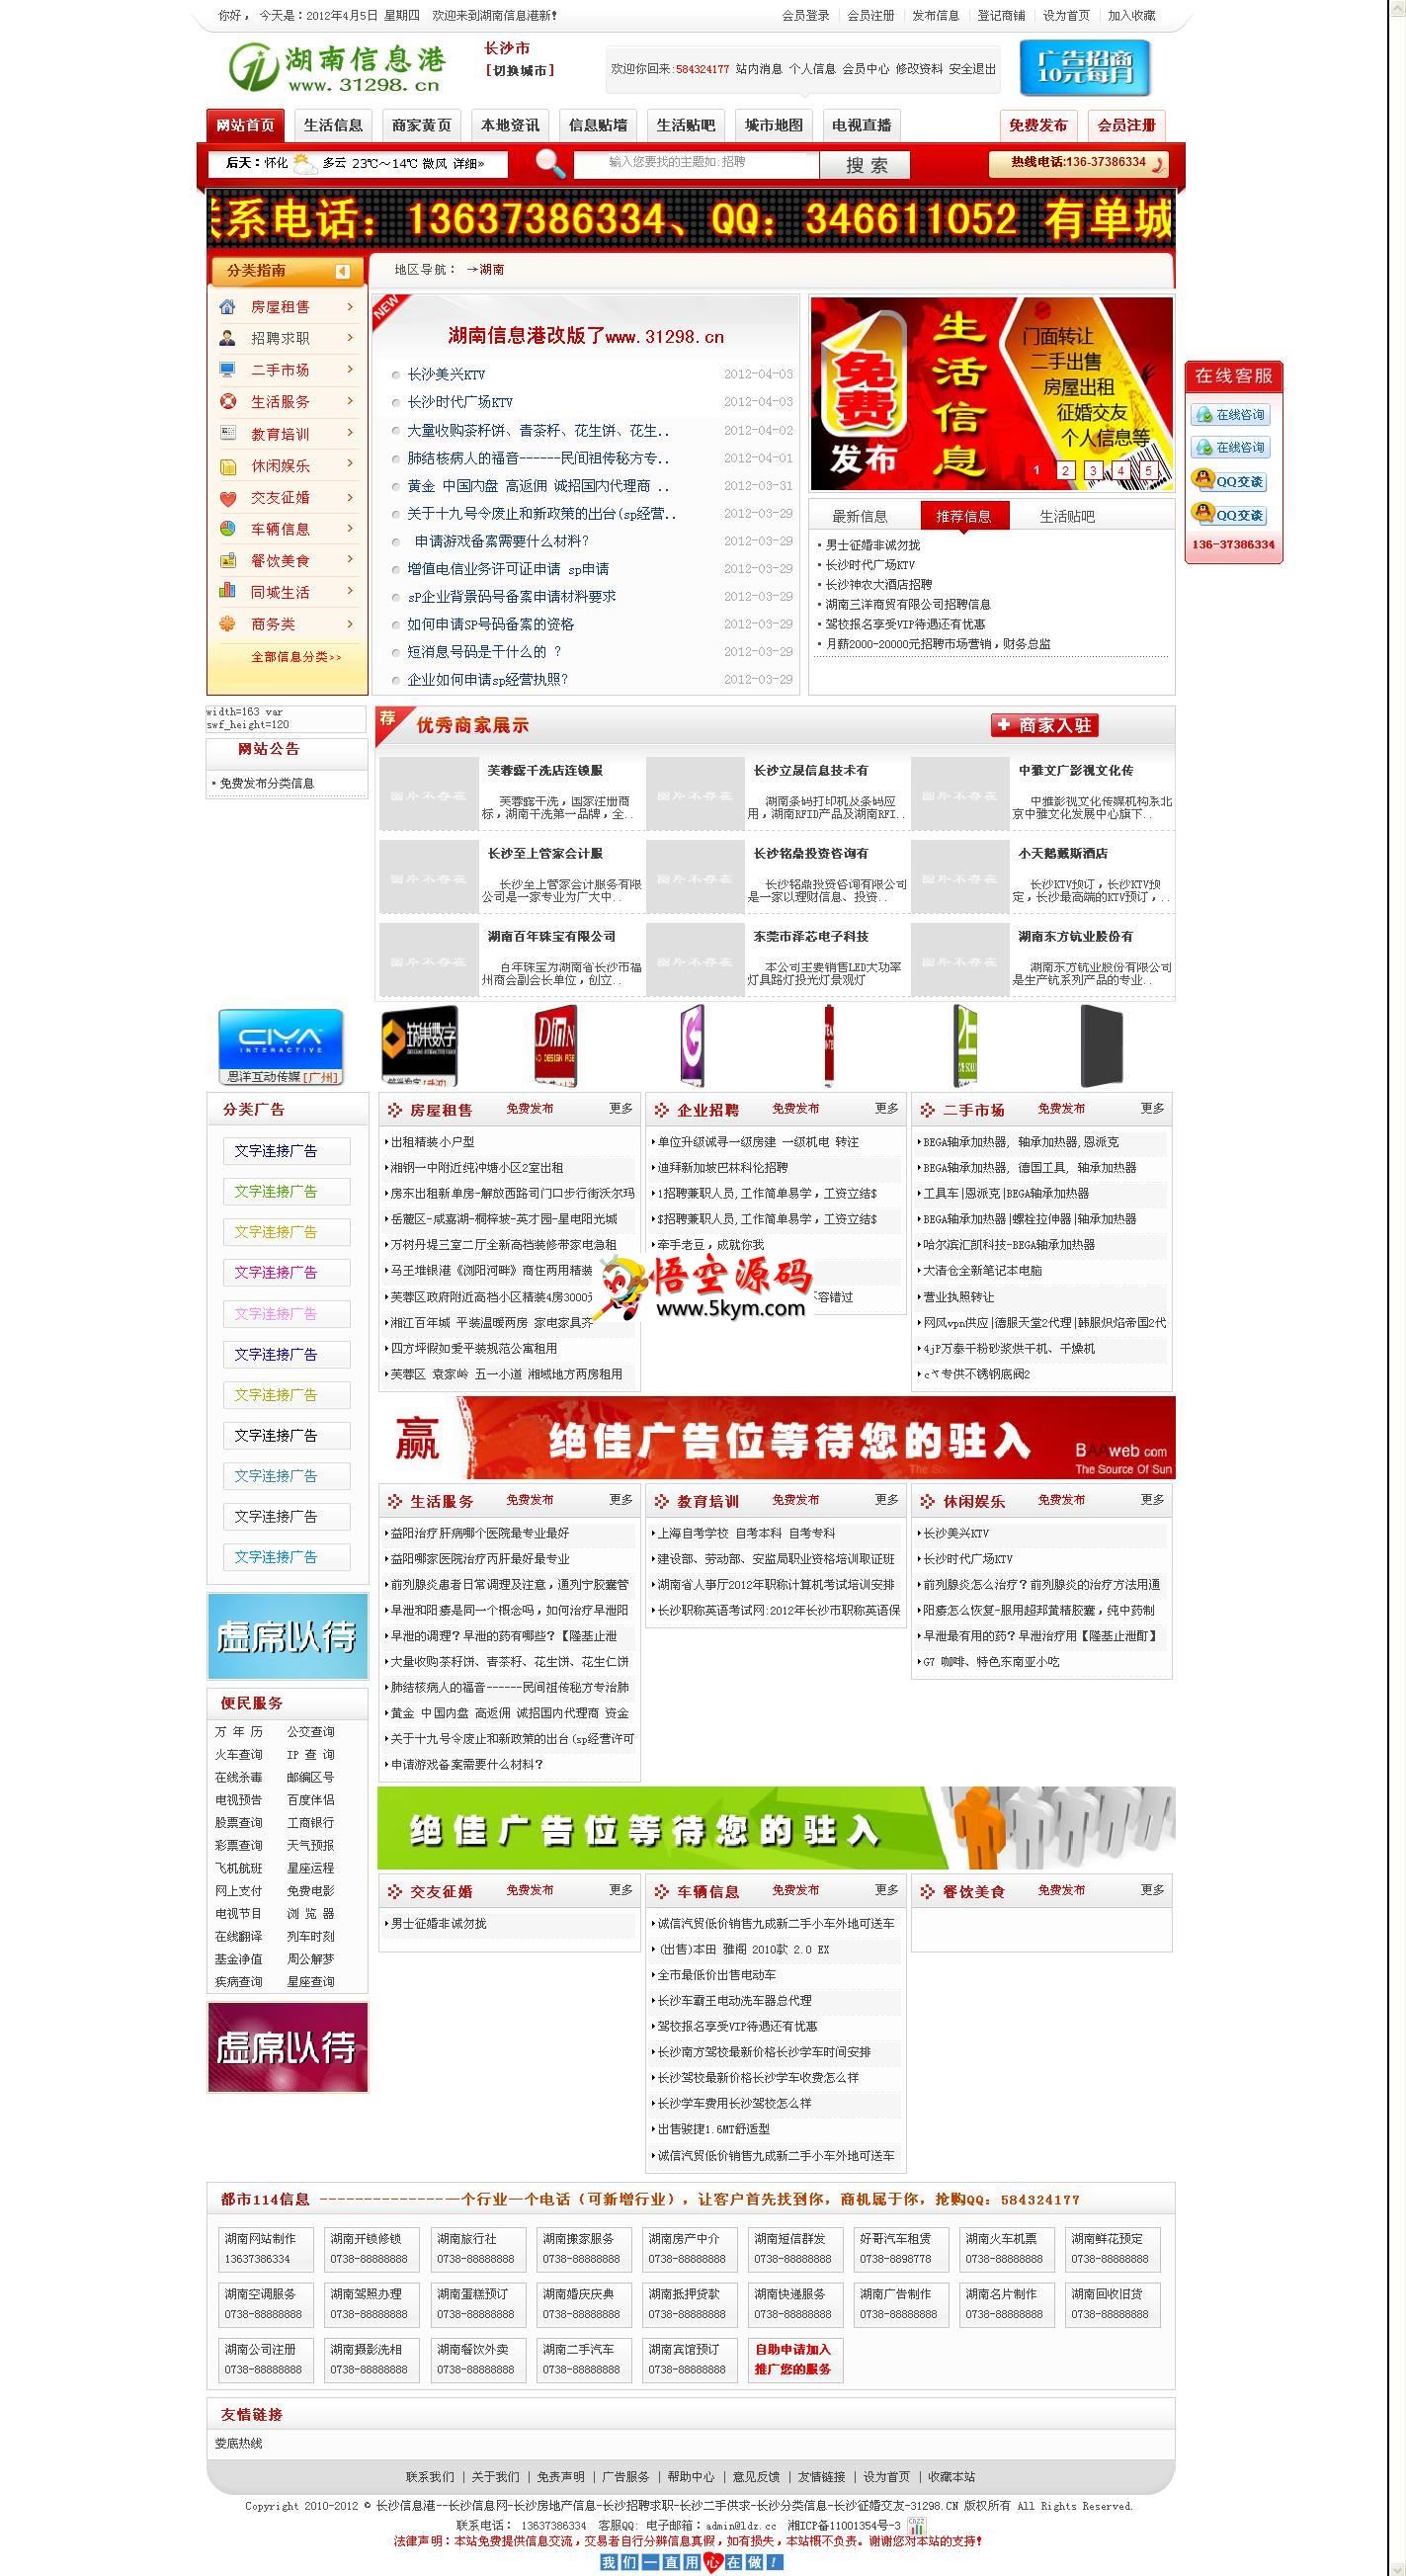 齐博B2B电子商务系统v1.0模板 红色模板 v1.0